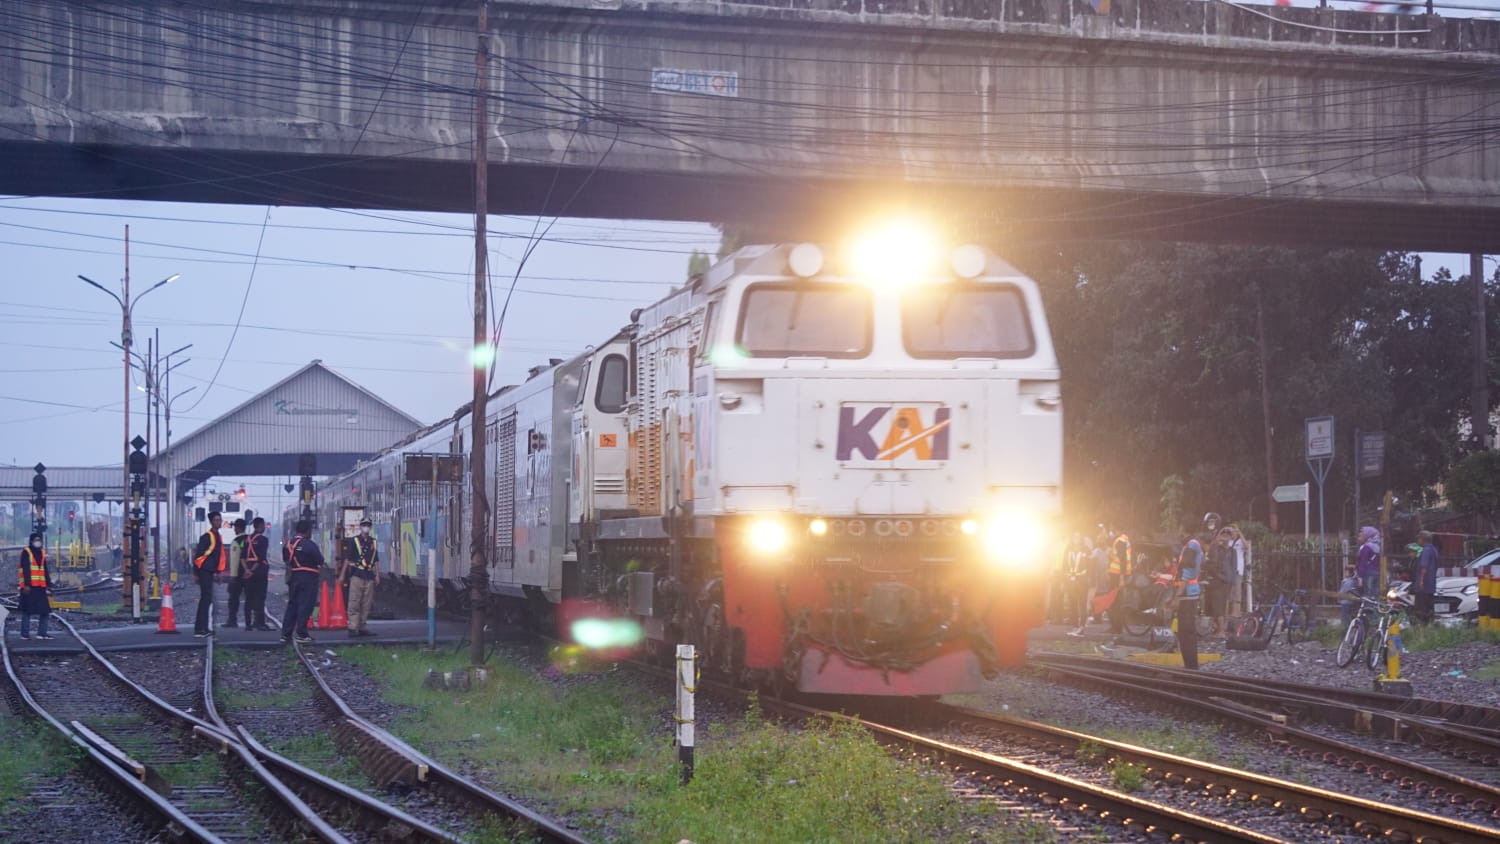 Mulai 1 Juni Kecepatan Kereta Api Meningkat di Perlintasan Daop 2 Bandung, Masyarakat Diimbau Hati-Hati 